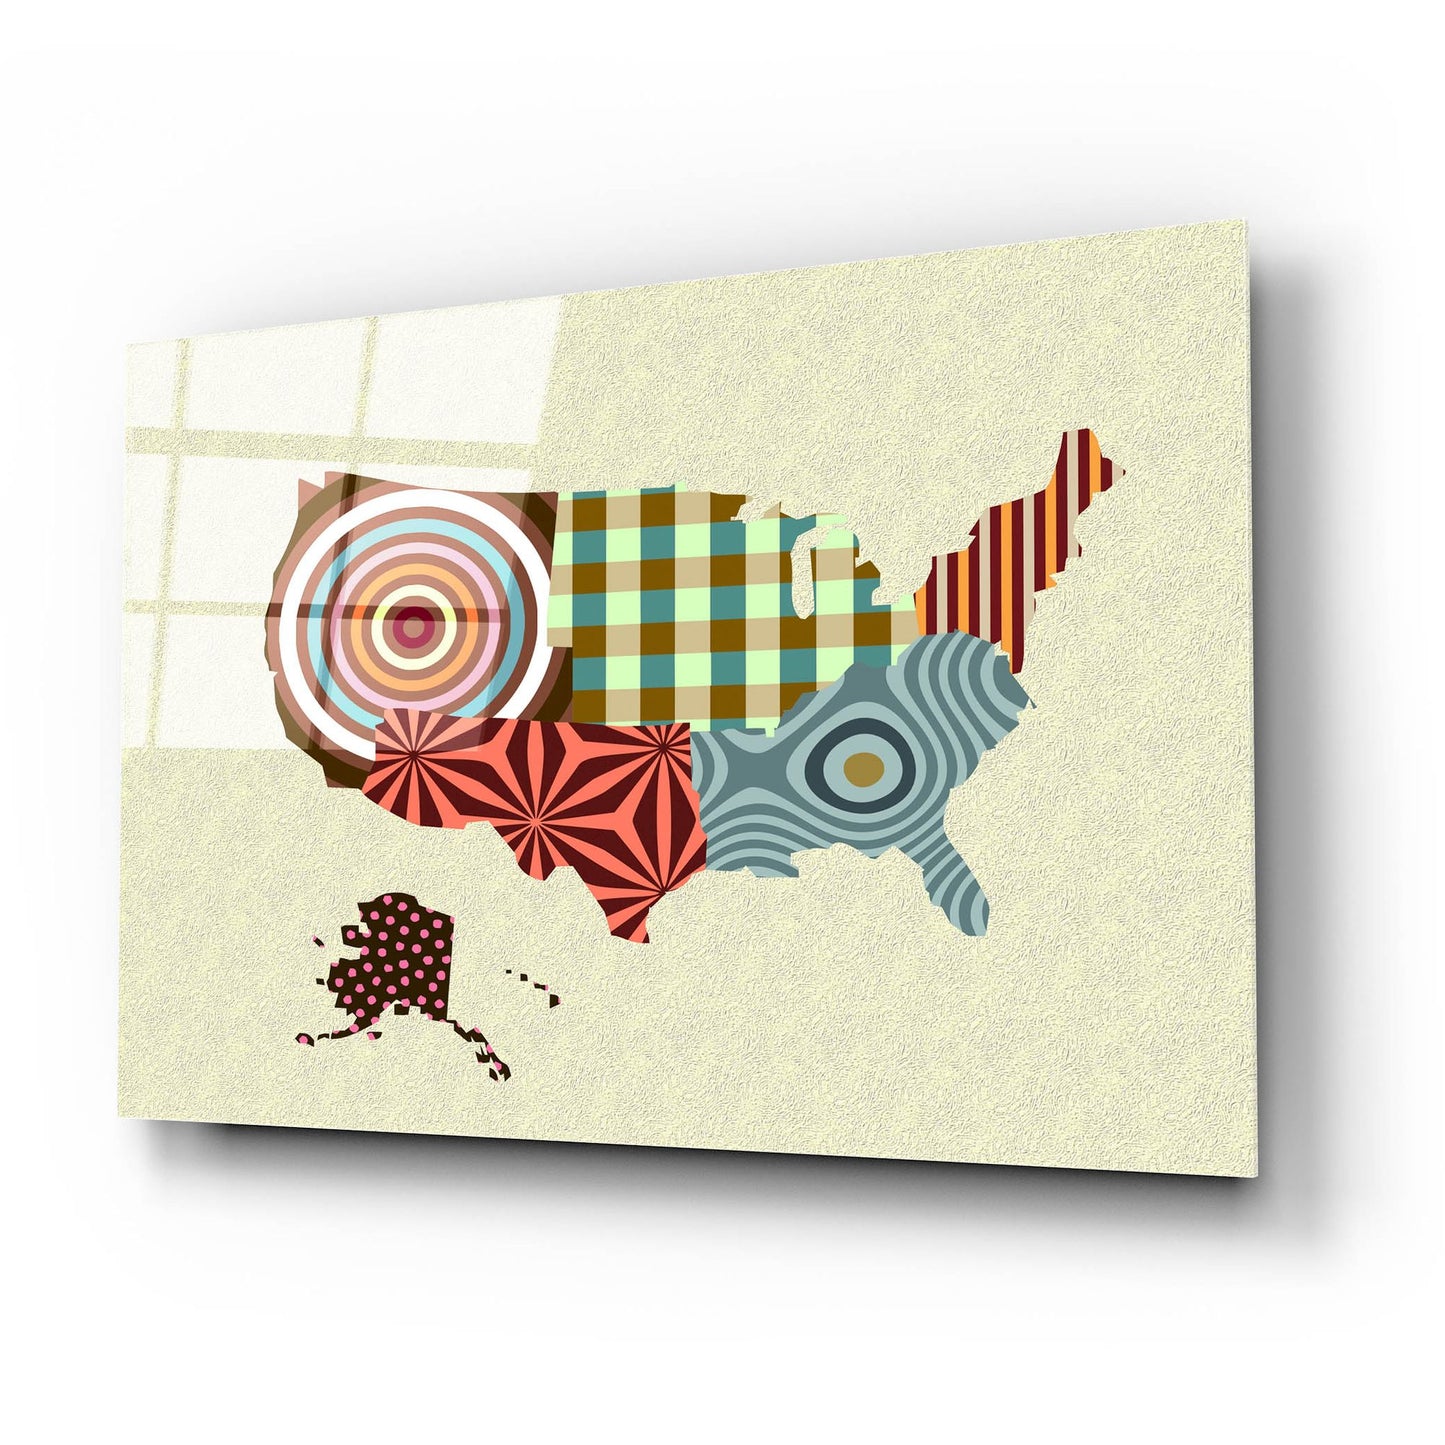 Epic Art 'USA Map' by Lanre Adefioye, Acrylic Glass Wall Art,24x16